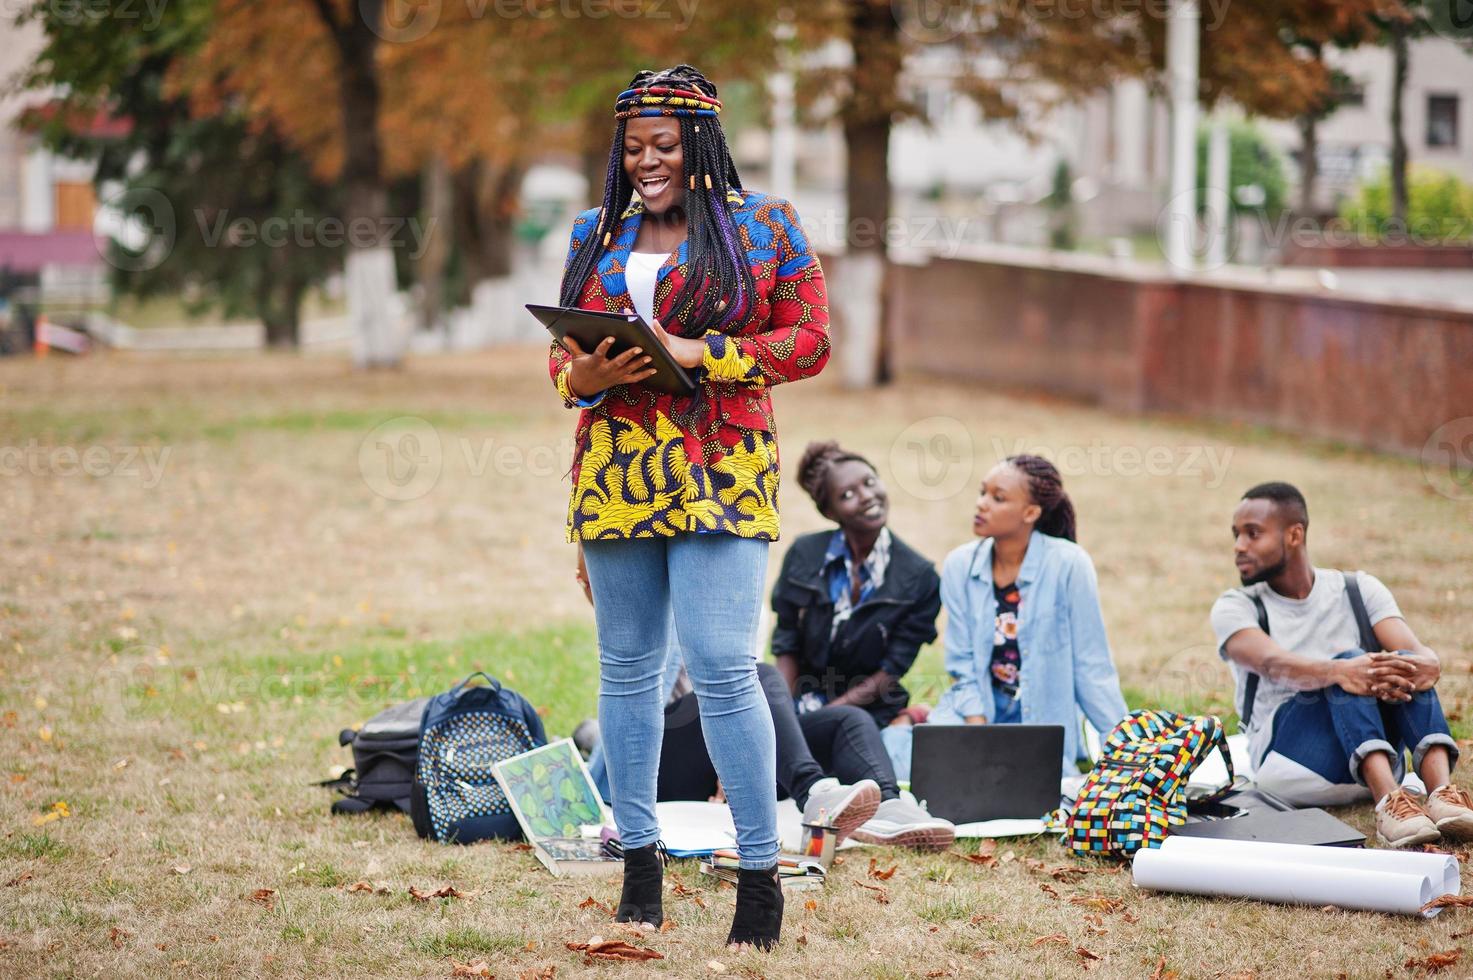 grupo de cinco estudantes universitários africanos passando tempo juntos no campus no pátio da universidade. amigos negros afro estudando. tema educação. foto